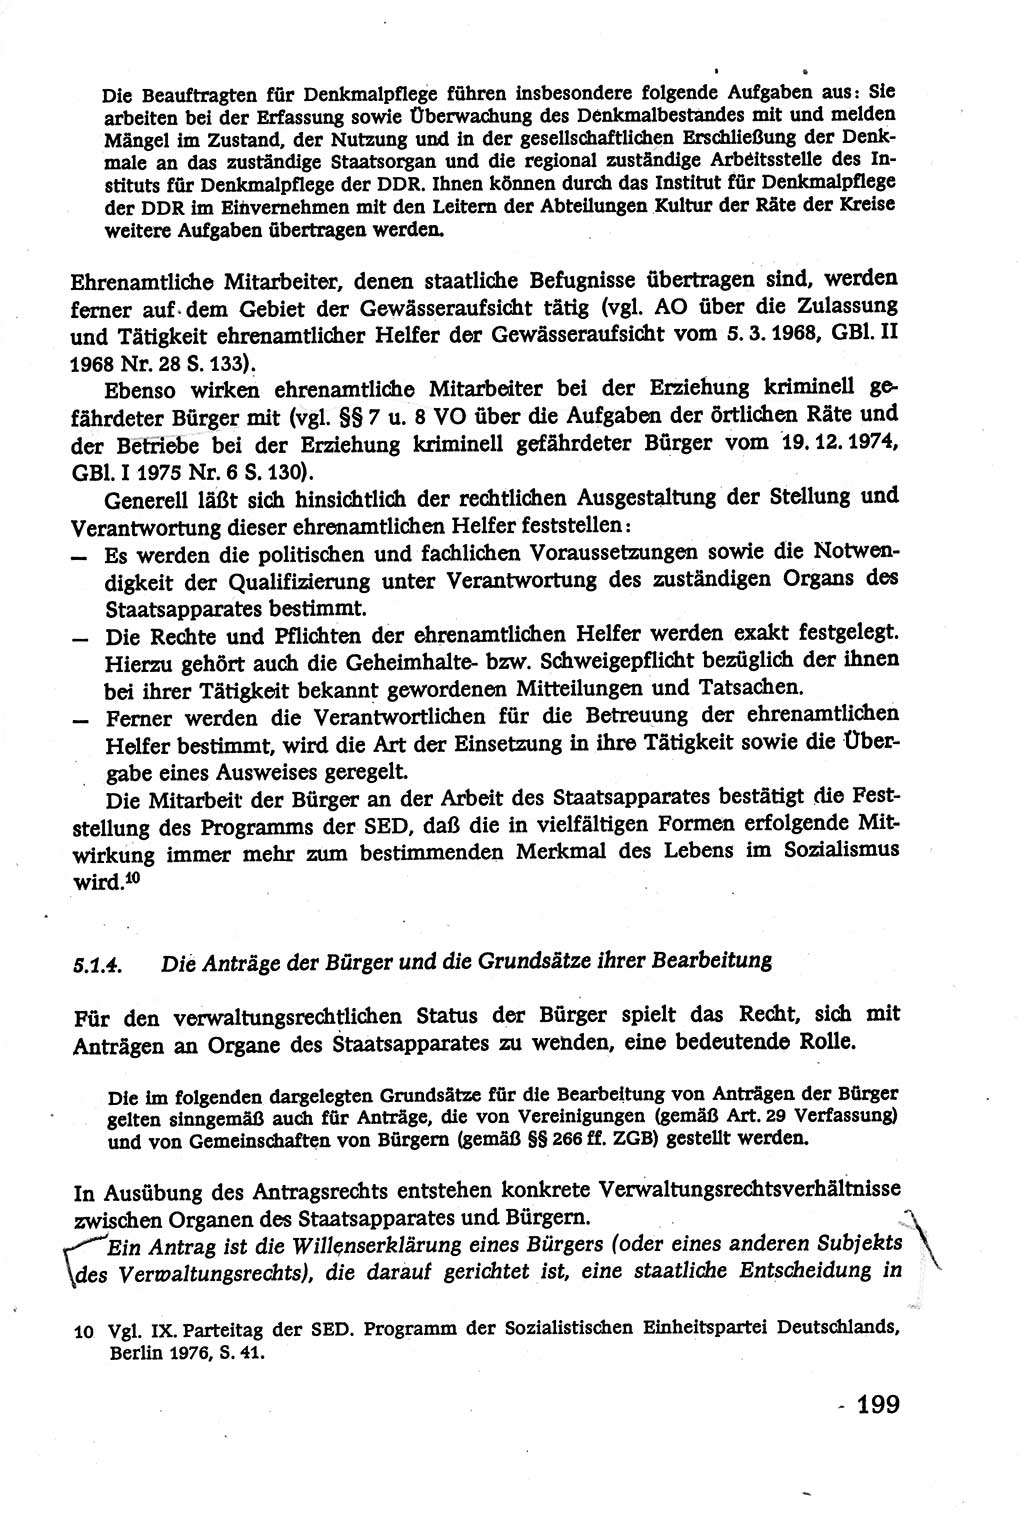 Verwaltungsrecht [Deutsche Demokratische Republik (DDR)], Lehrbuch 1979, Seite 199 (Verw.-R. DDR Lb. 1979, S. 199)